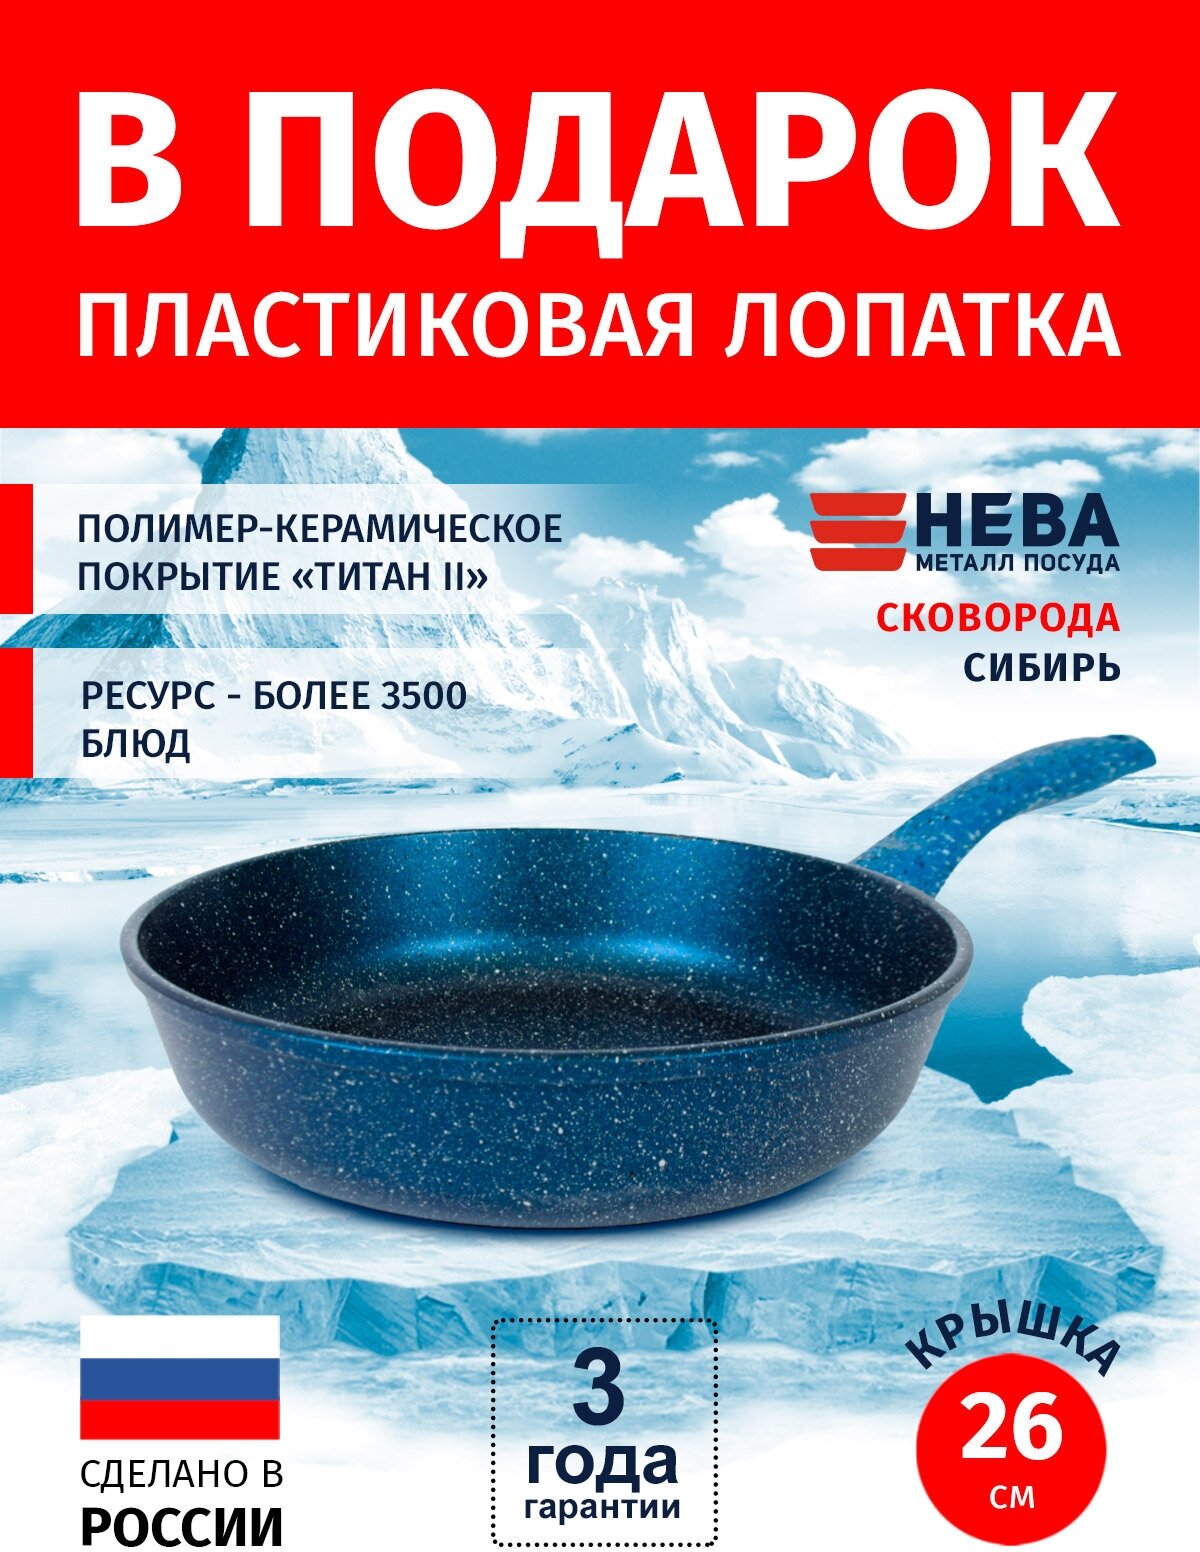 Сковорода 26см нева металл посуда Сибирь каменное покрытие высокий борт, Россия + Лопатка в подарок